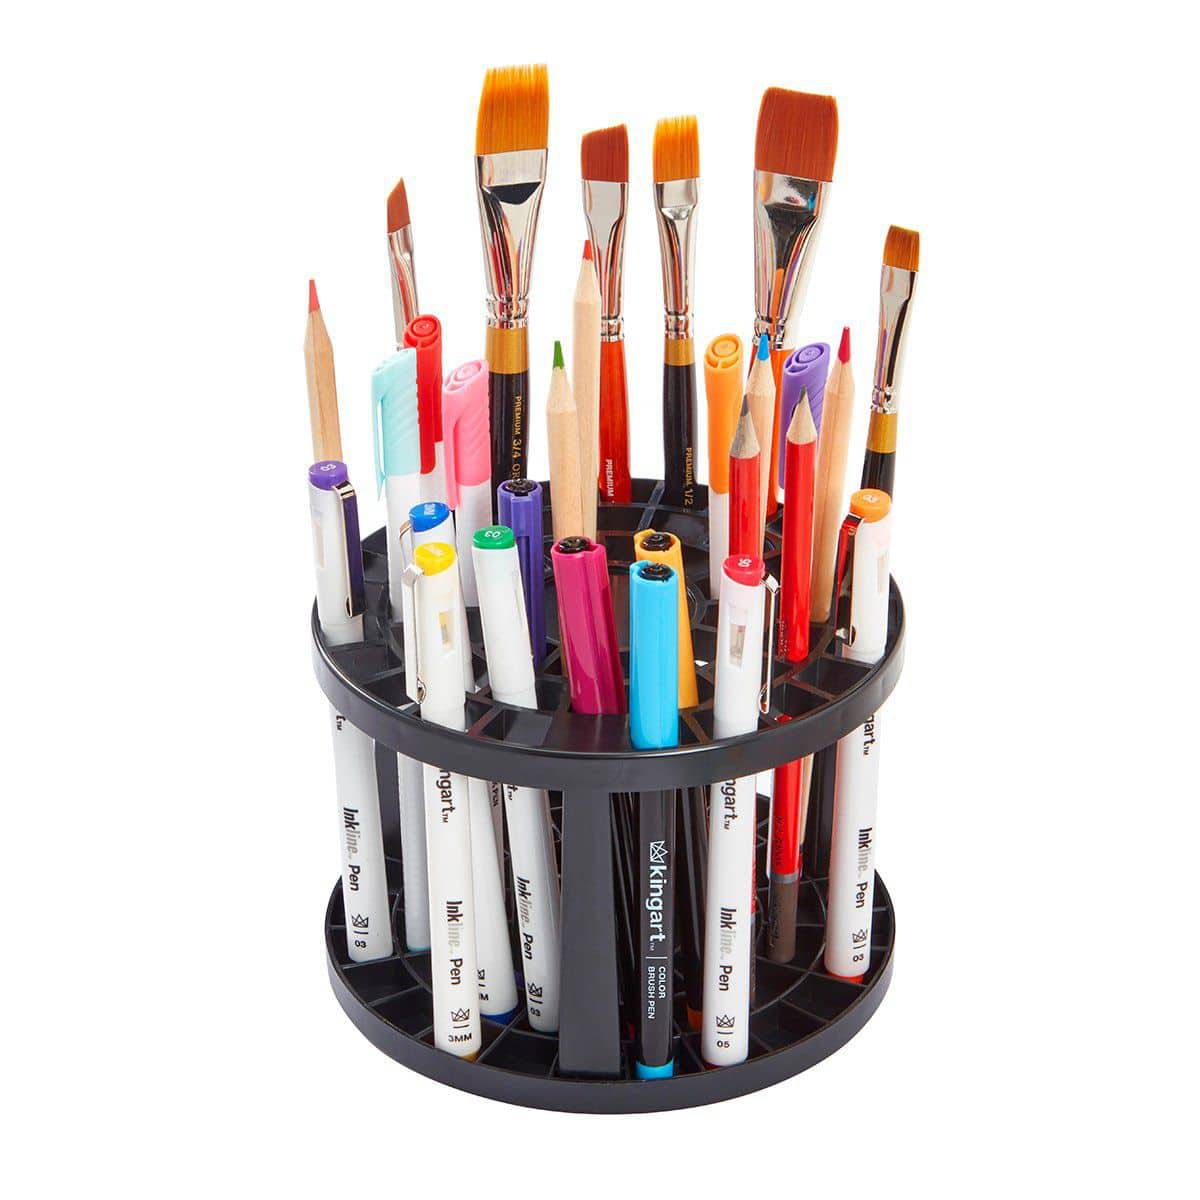 Operitacx 96 Paint Brush Organizer Paintbrush Holder Organizer Pen  Organizer Pen Holder for Desk Desktop Display Stand Paint Brush Holder  Artist Brush